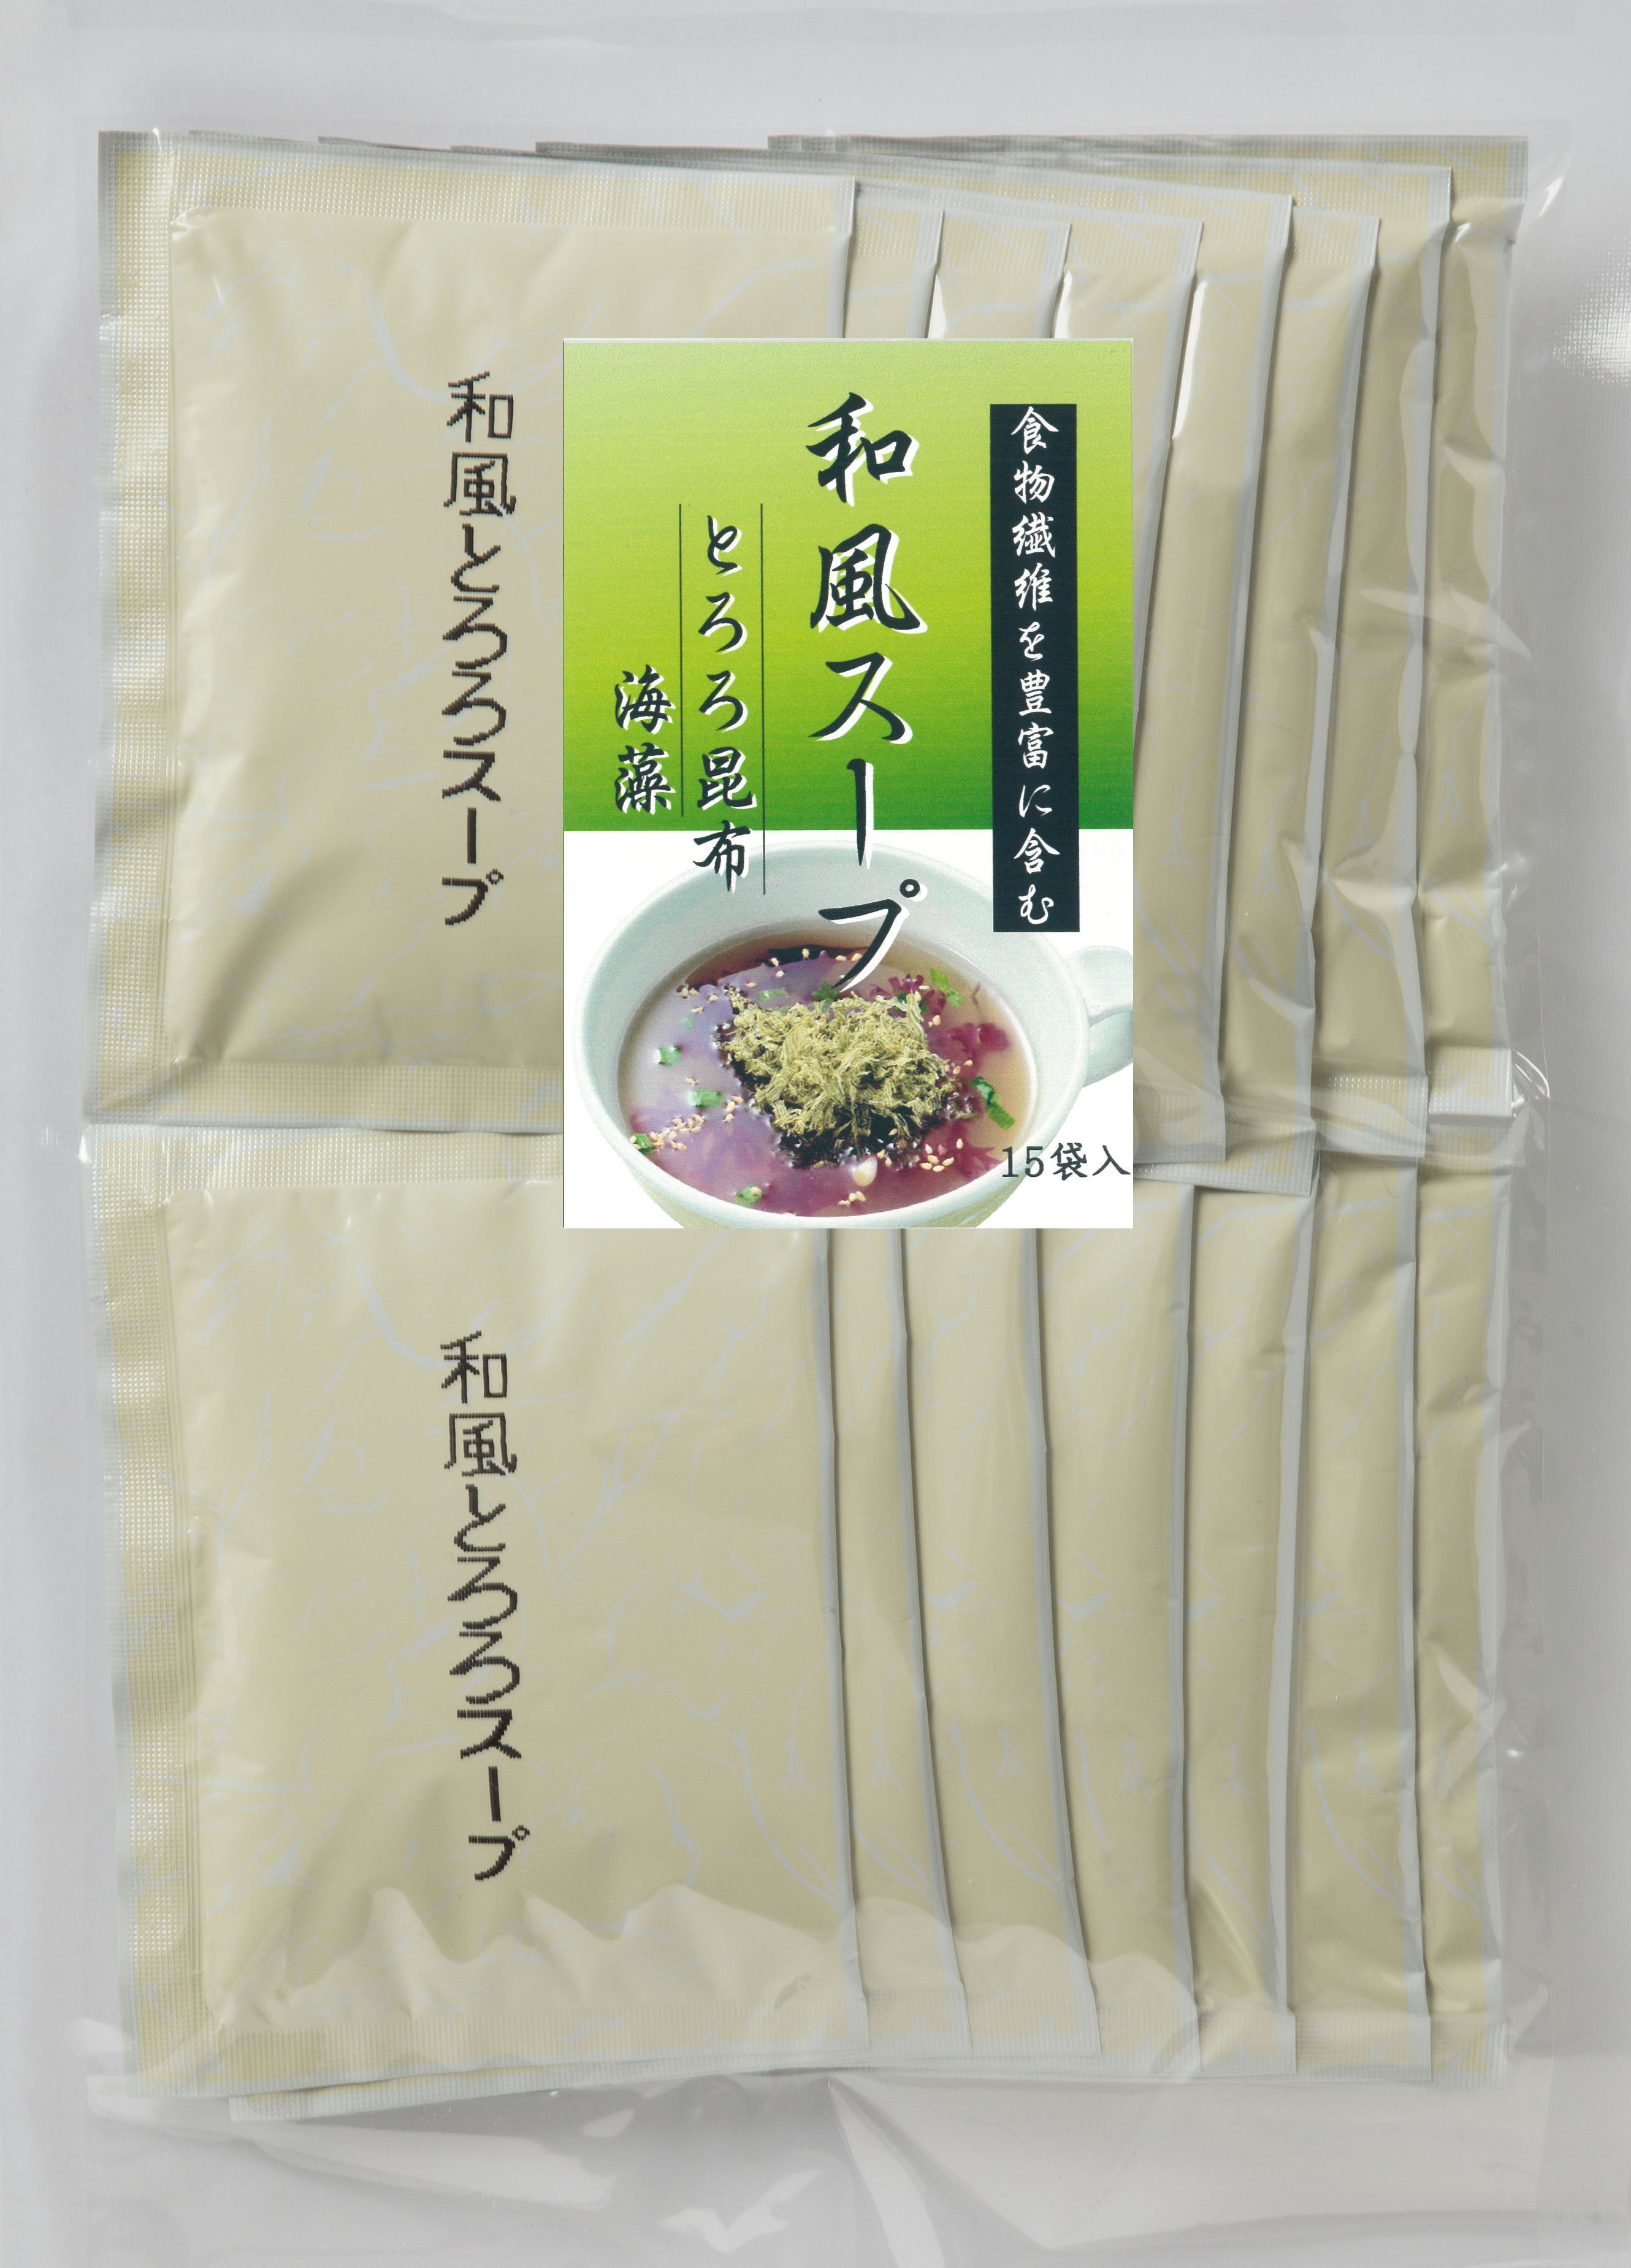 北海道のスープギフト | Hokkai Yamato 北海大和ショッピングサイト / 和風スープ とろろ昆布・海藻15袋